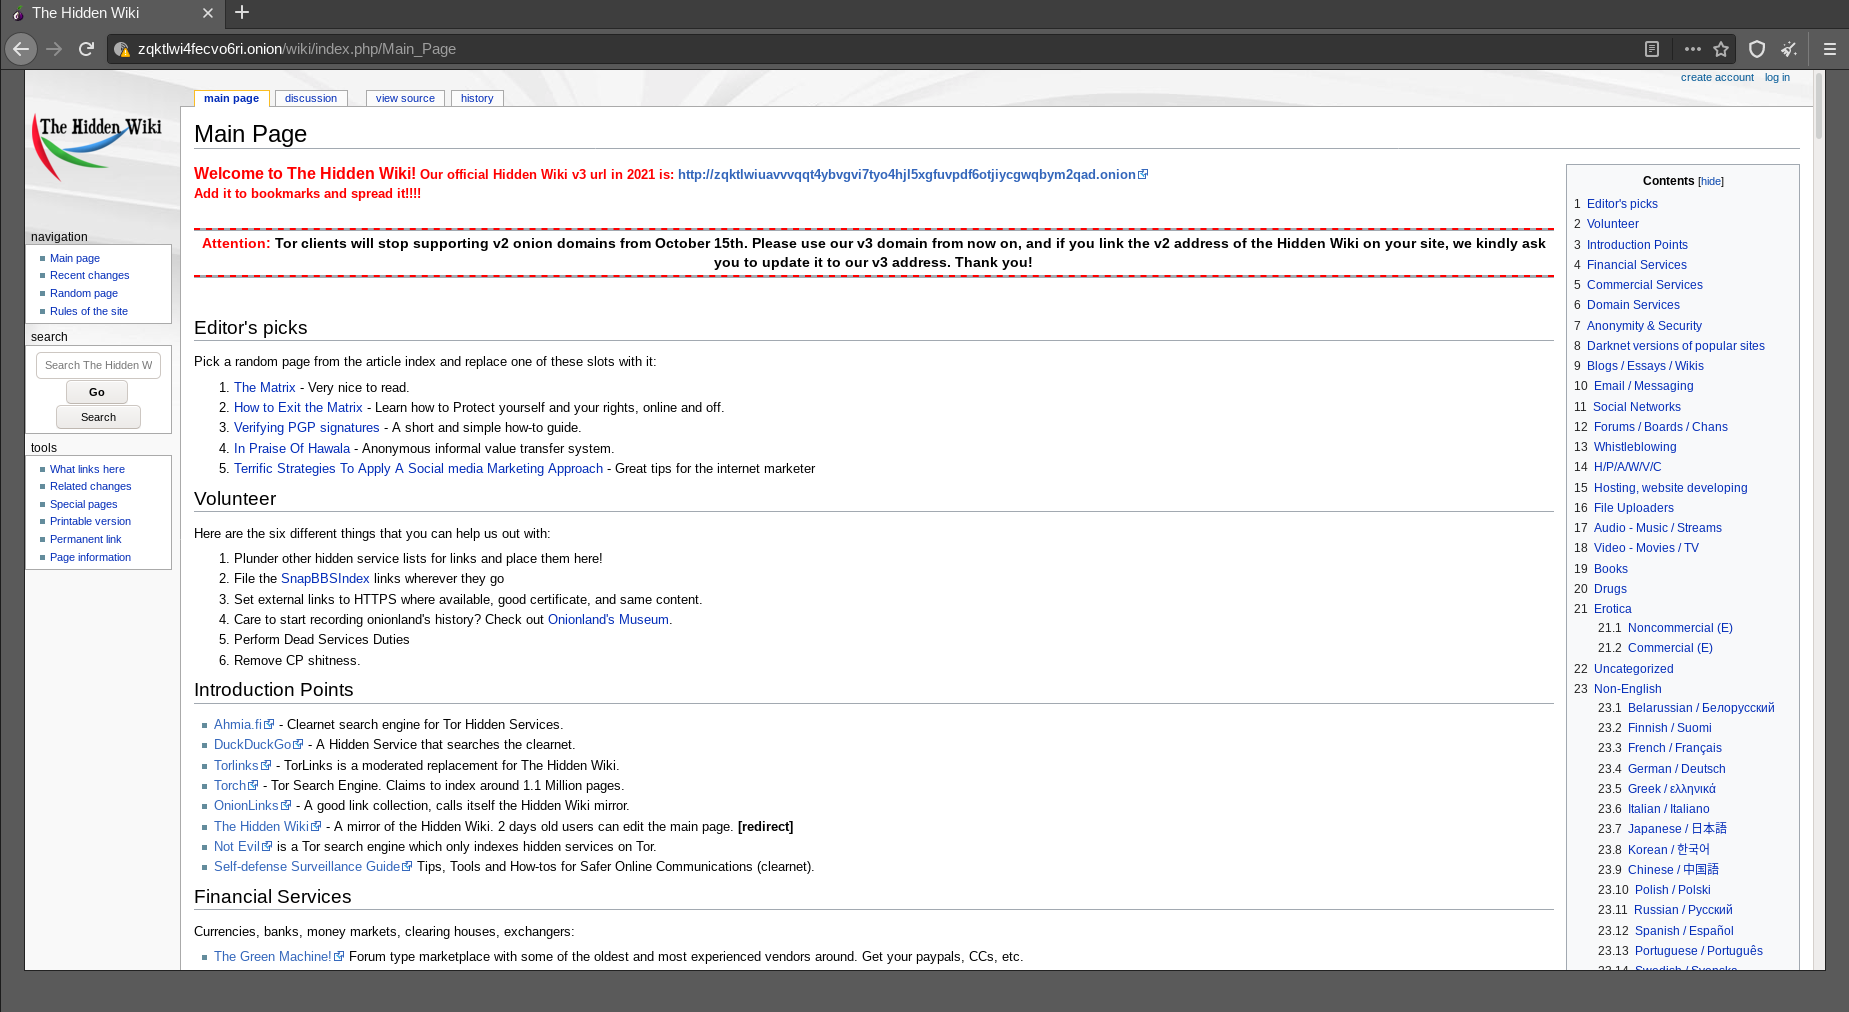 Die Startseite der Dark-Web-Version von Wikipedia, die als The Hidden Wiki bezeichnet wird.